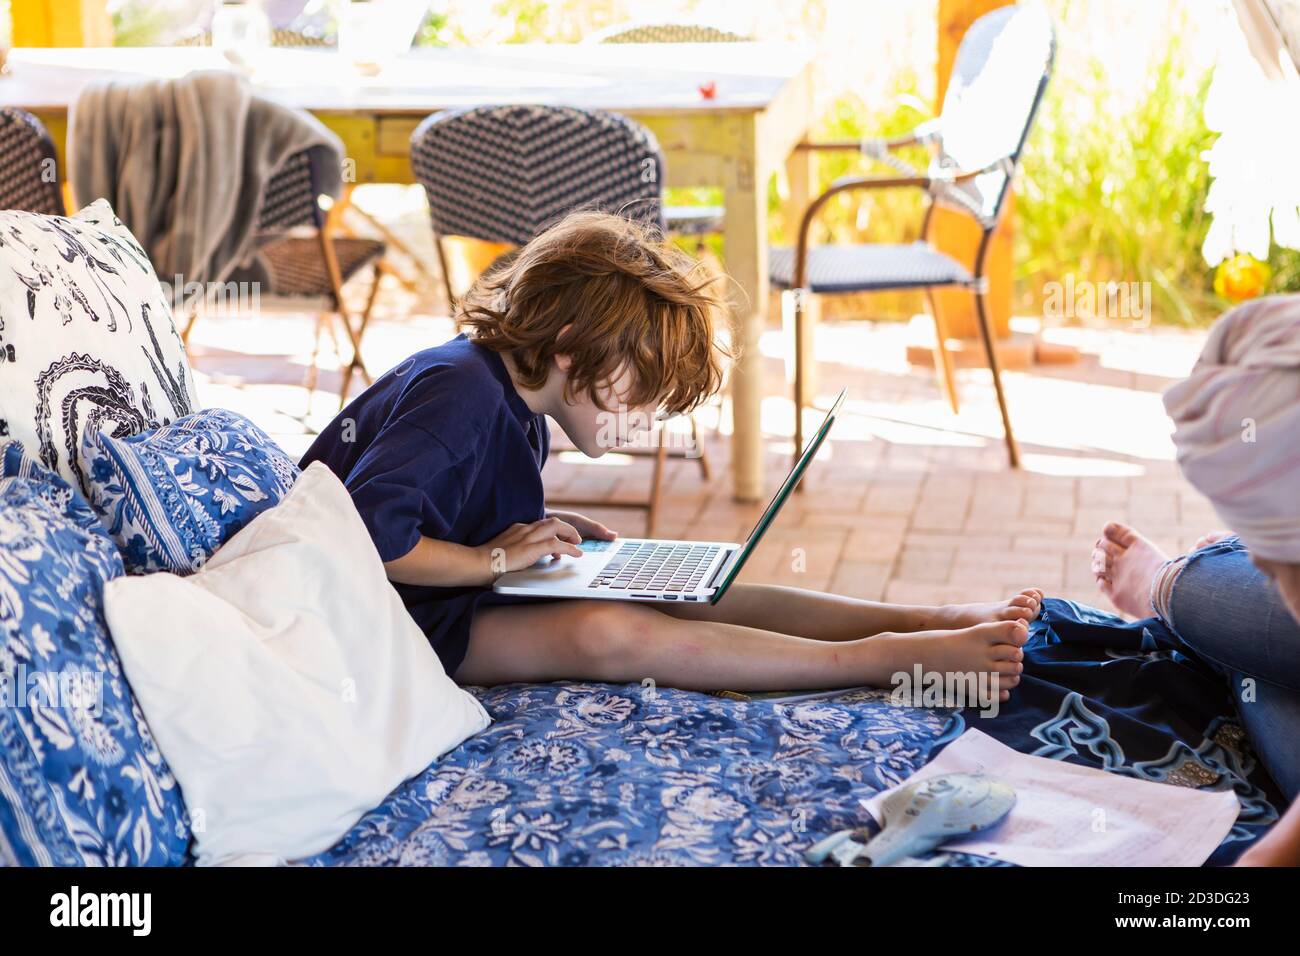 Ragazzo con i capelli marroni seduti sul letto esterno, facendo i compiti sul computer portatile. Foto Stock